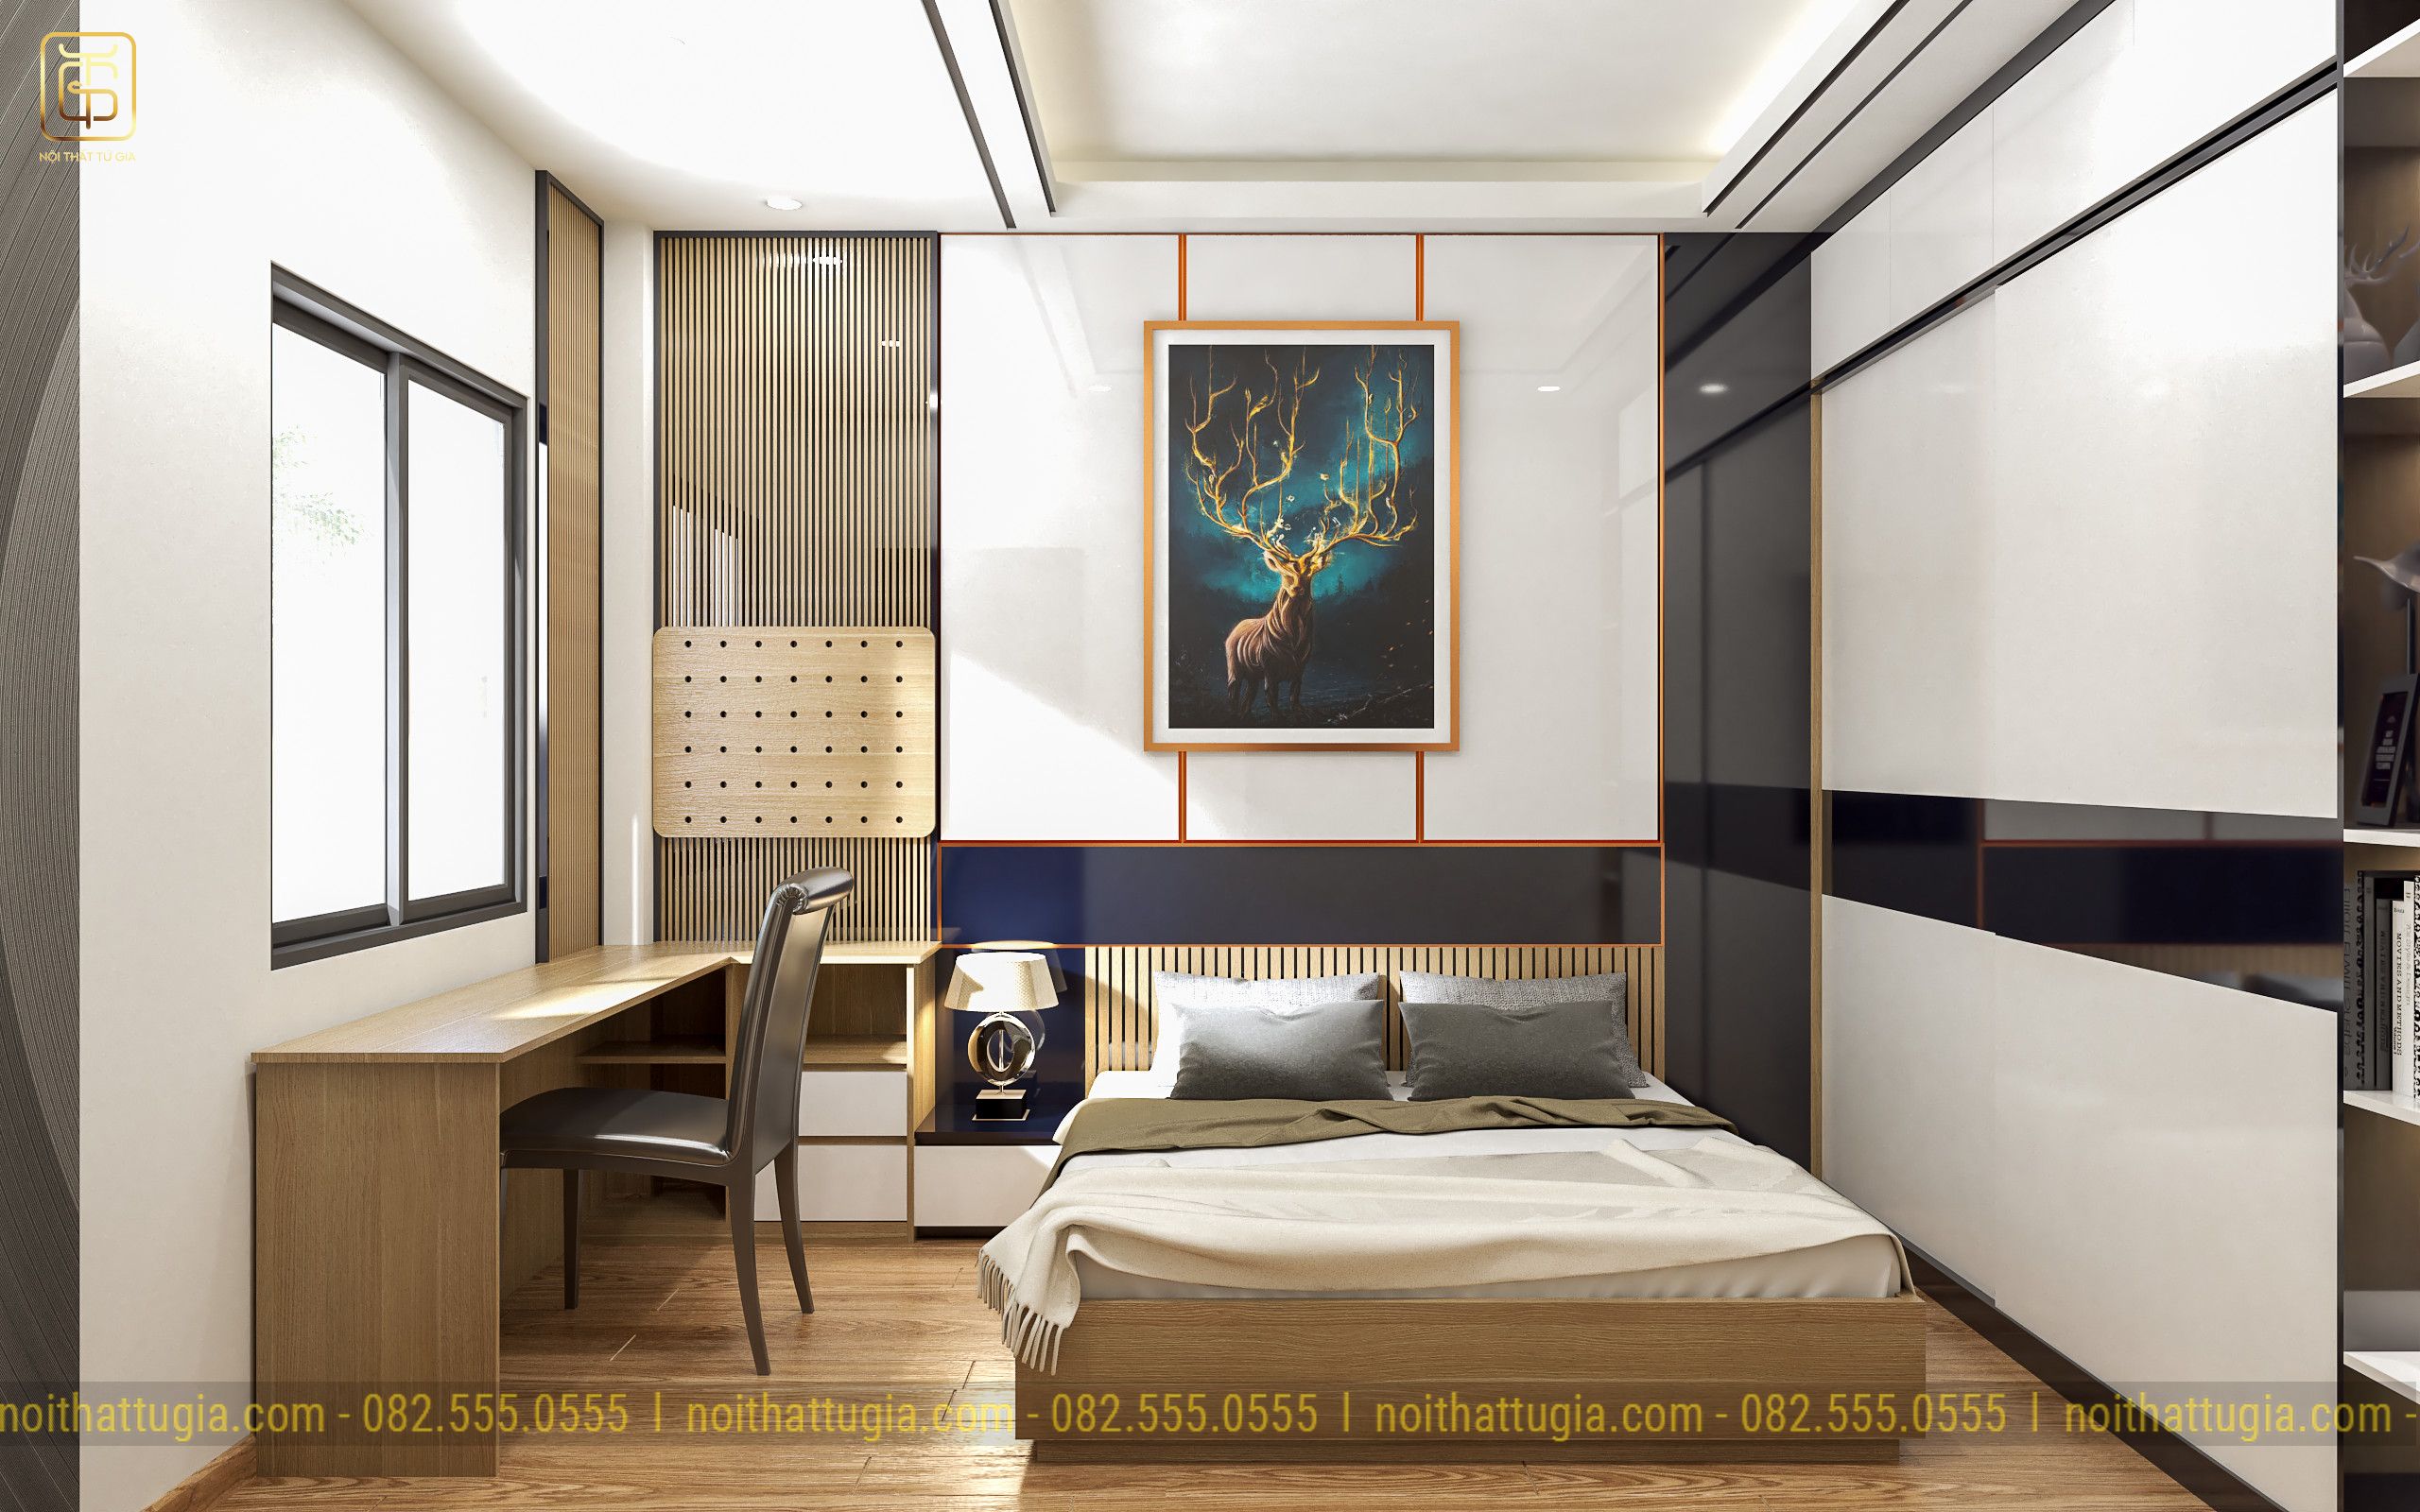 Phòng ngủ con trai hiện đại tinh tế với tông màu nhẹ nhàng tinh tế